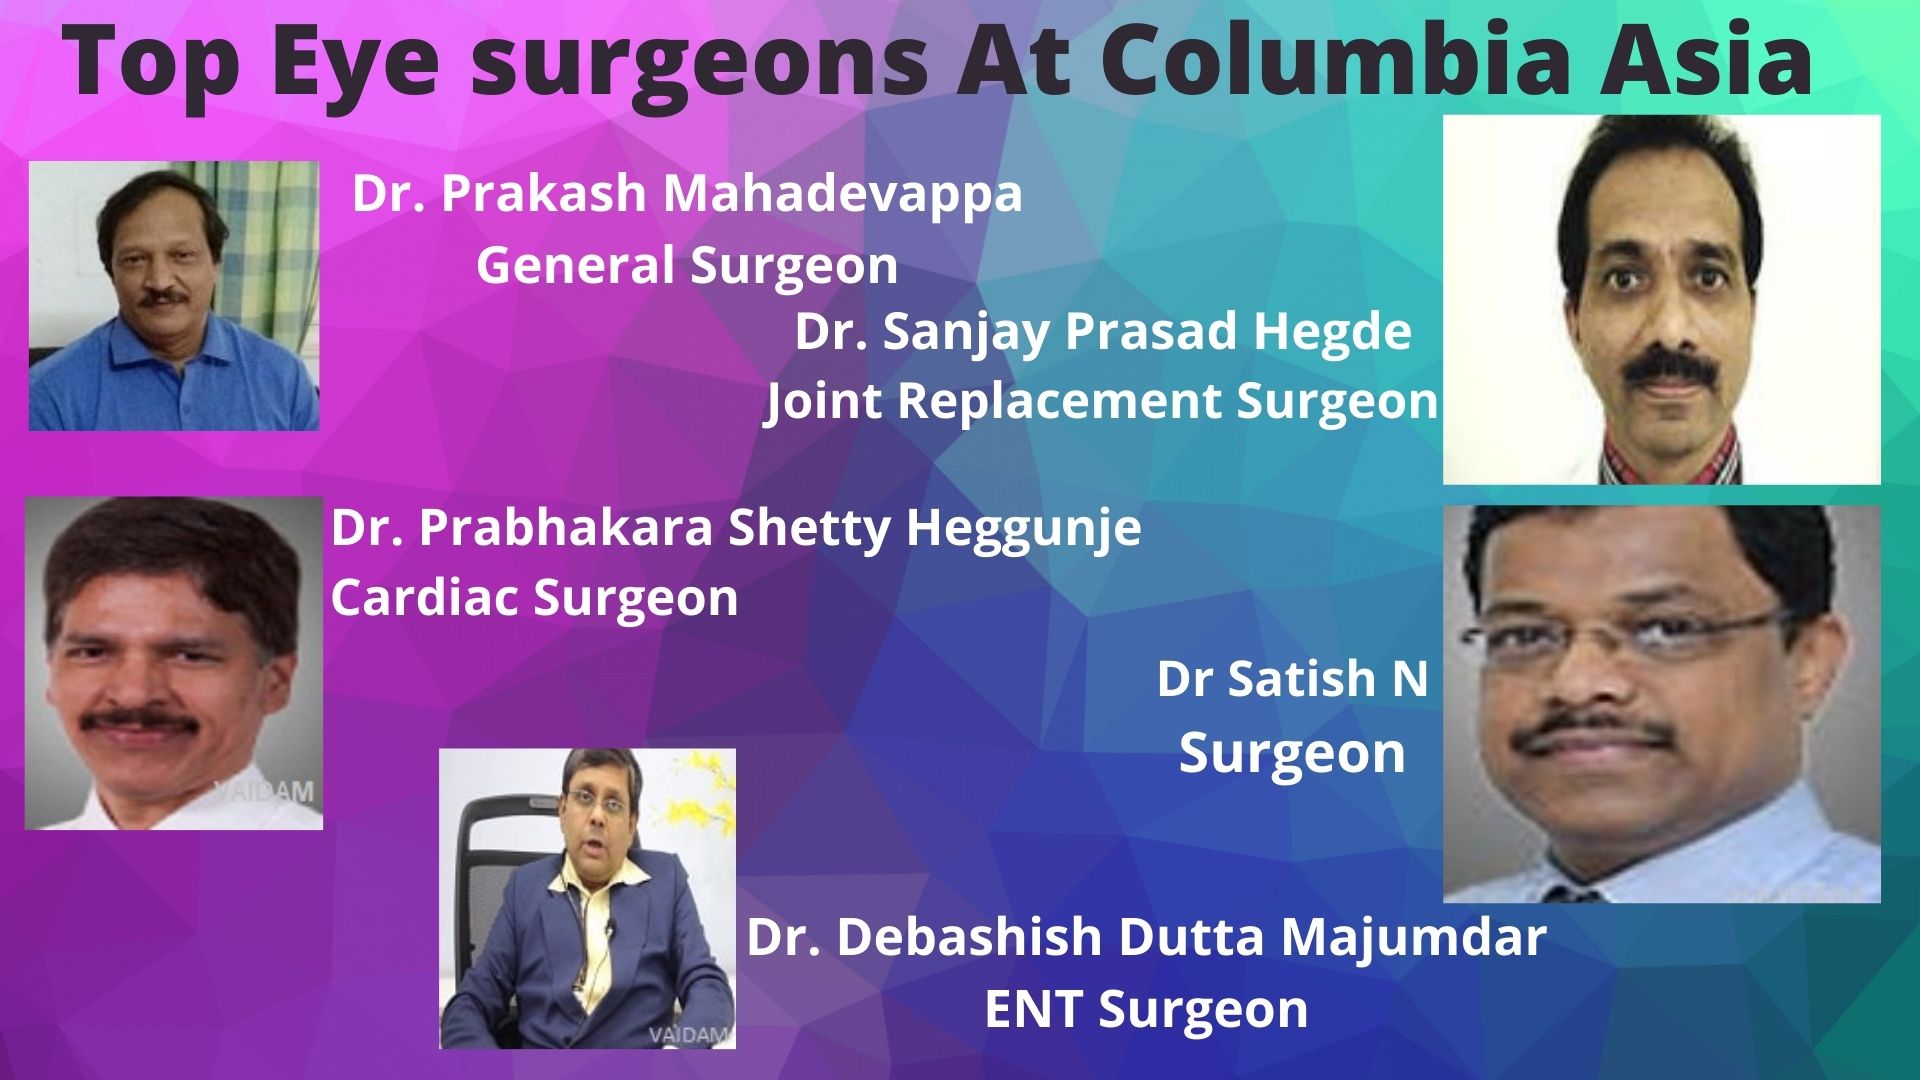 Top Eye surgeons At Columbia Asia